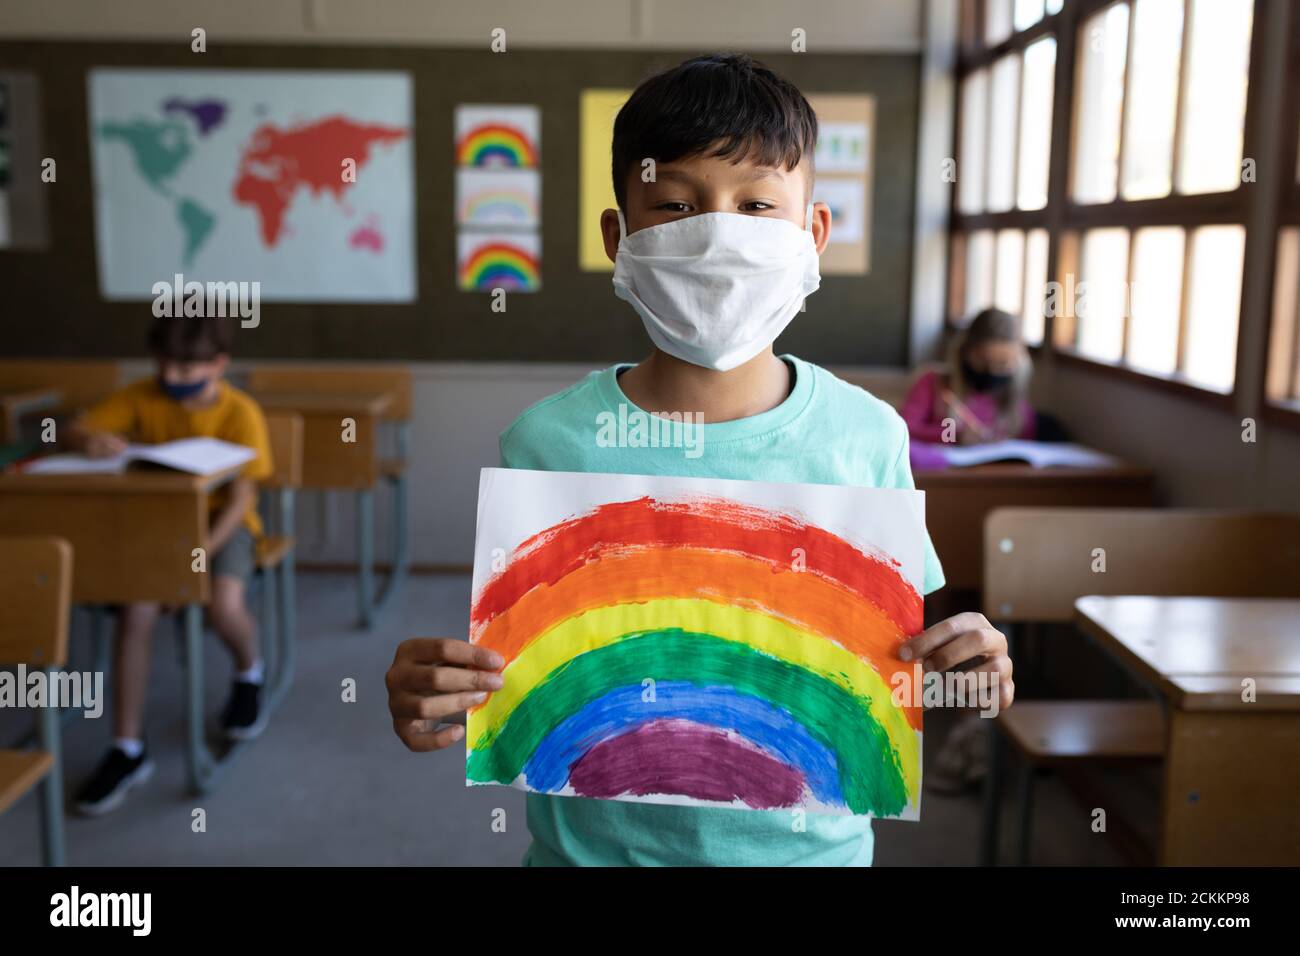 Retrato de niño con máscara de cara sosteniendo un dibujo de arco iris en la escuela Foto de stock